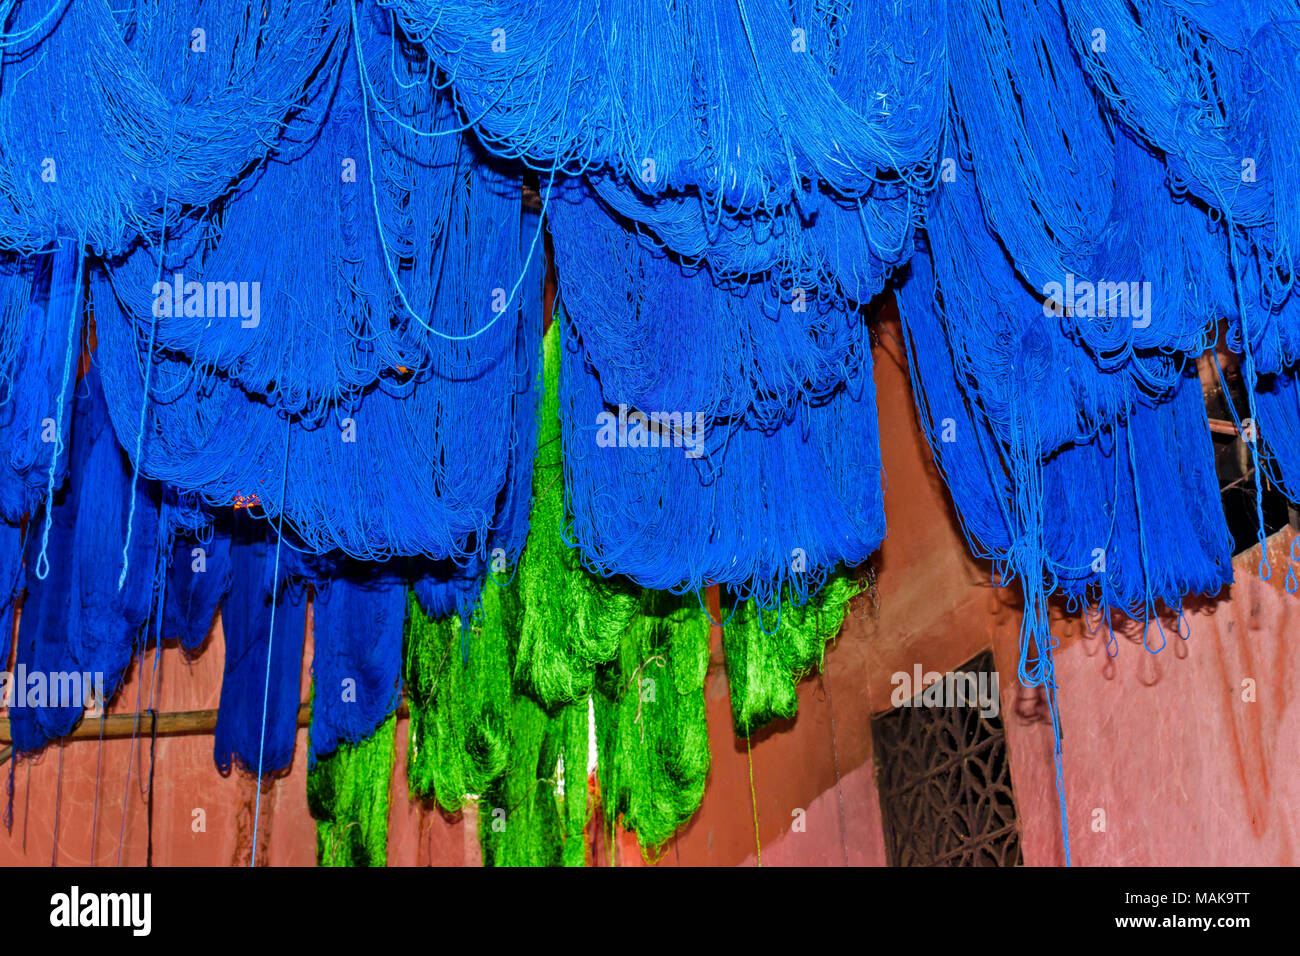 Il Marocco Marrakech Jemaa el Fna MEDINA SOUK matasse di blu di lana colorati appesi al sole ad asciugare Foto Stock